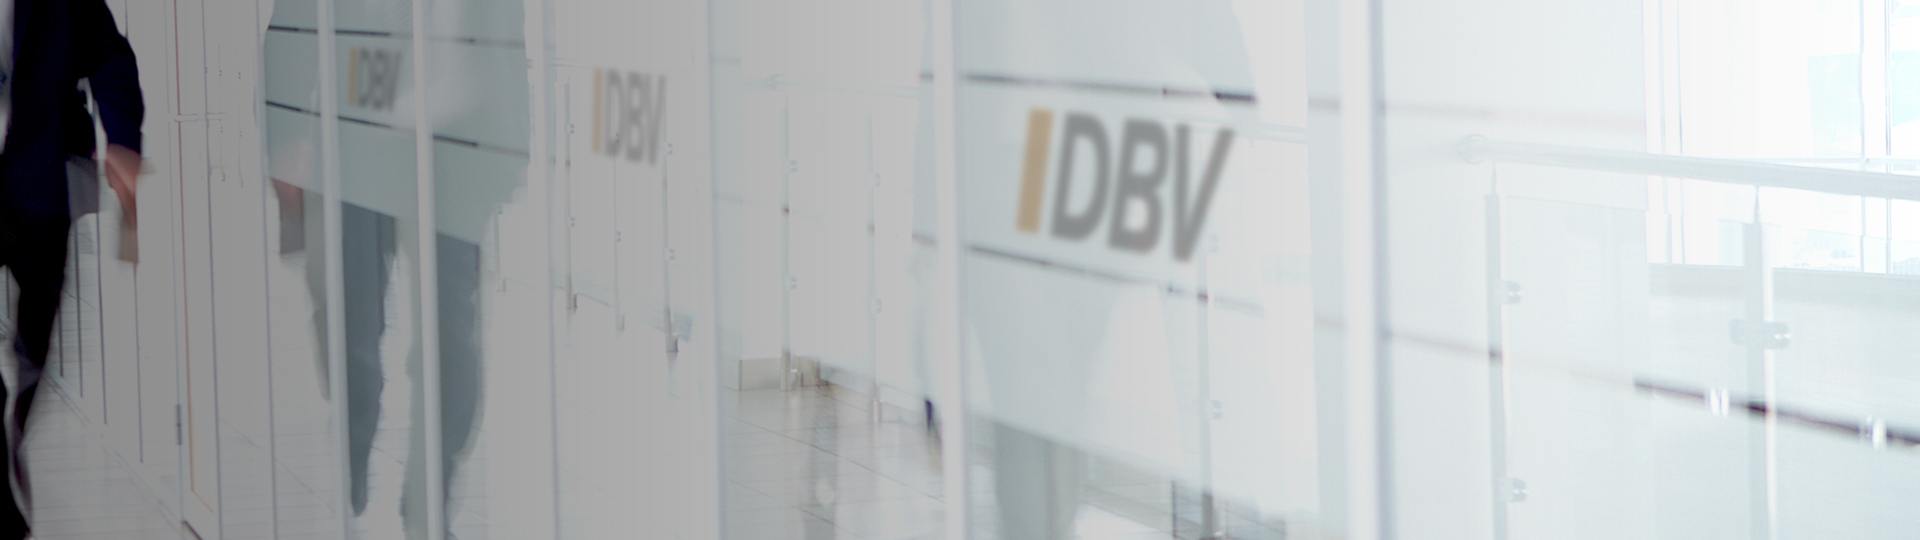 Krankenversicherung | DBV Hannover Hornig & Knoch oHG